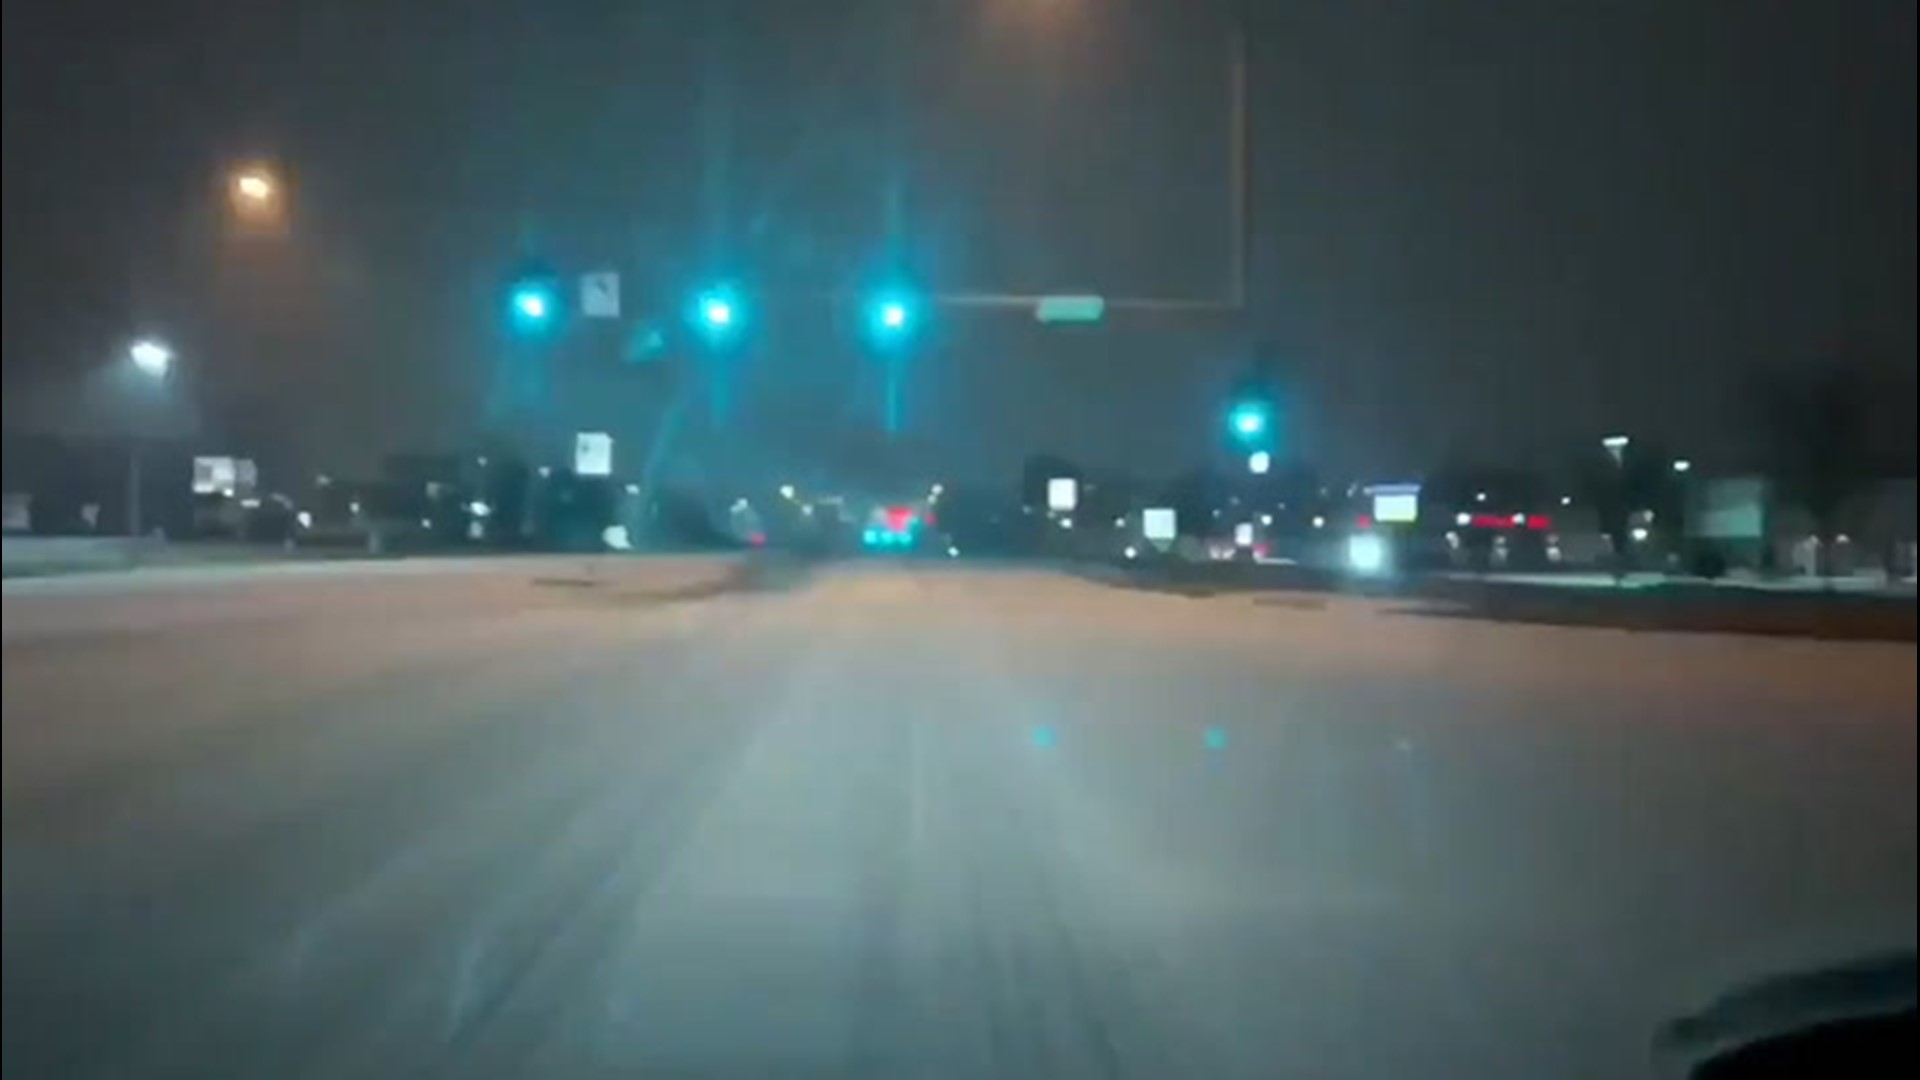 Roads around Omaha, Nebraska, turned white as sleet blanketed the region on April 3.